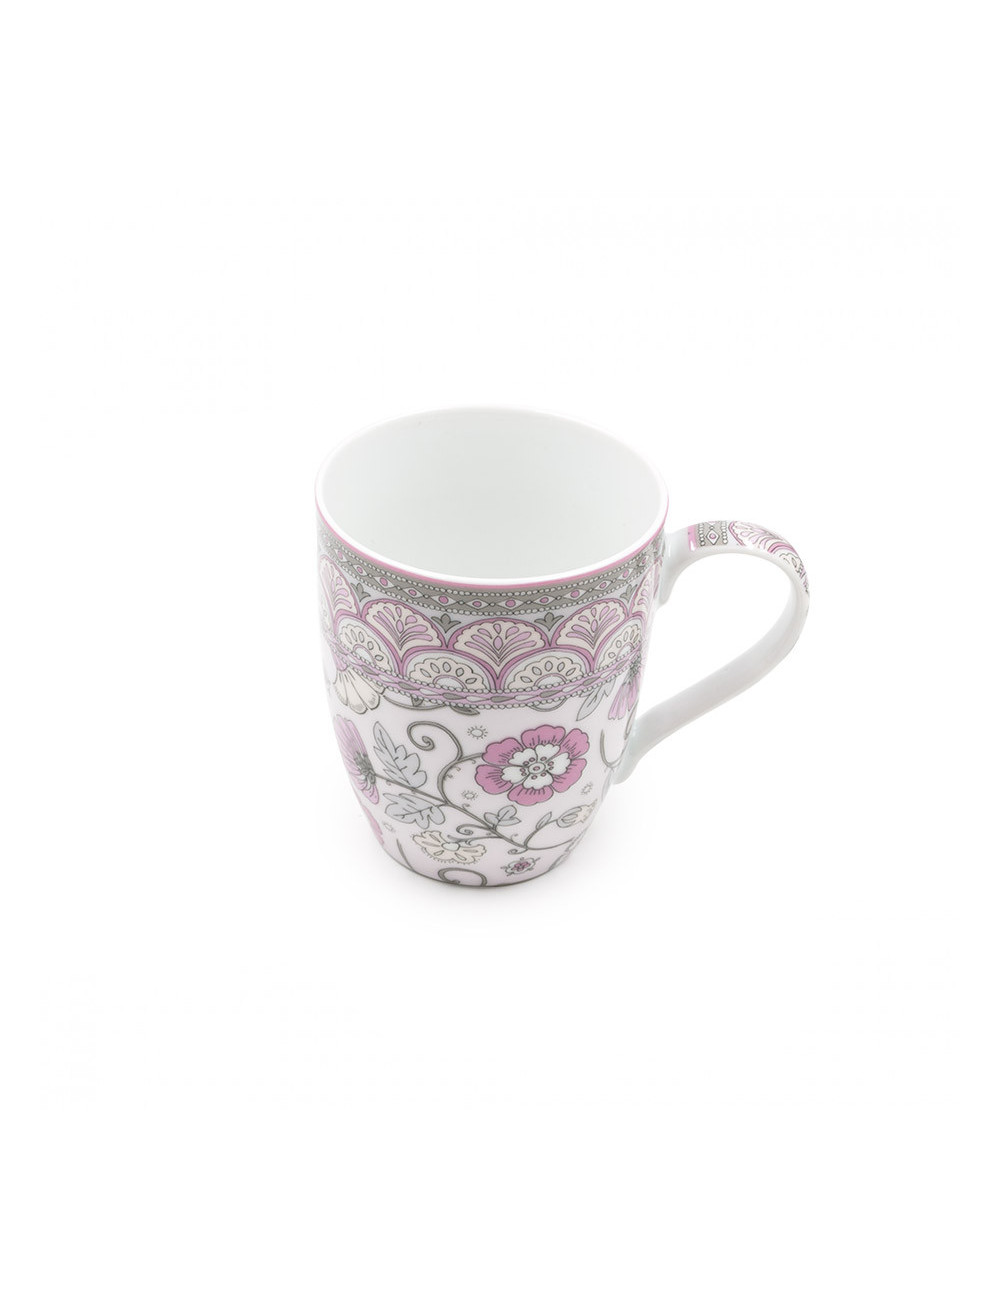 Mug in porcellana decorata con fiori rosa e grigi - La Pianta del Tè shop on line